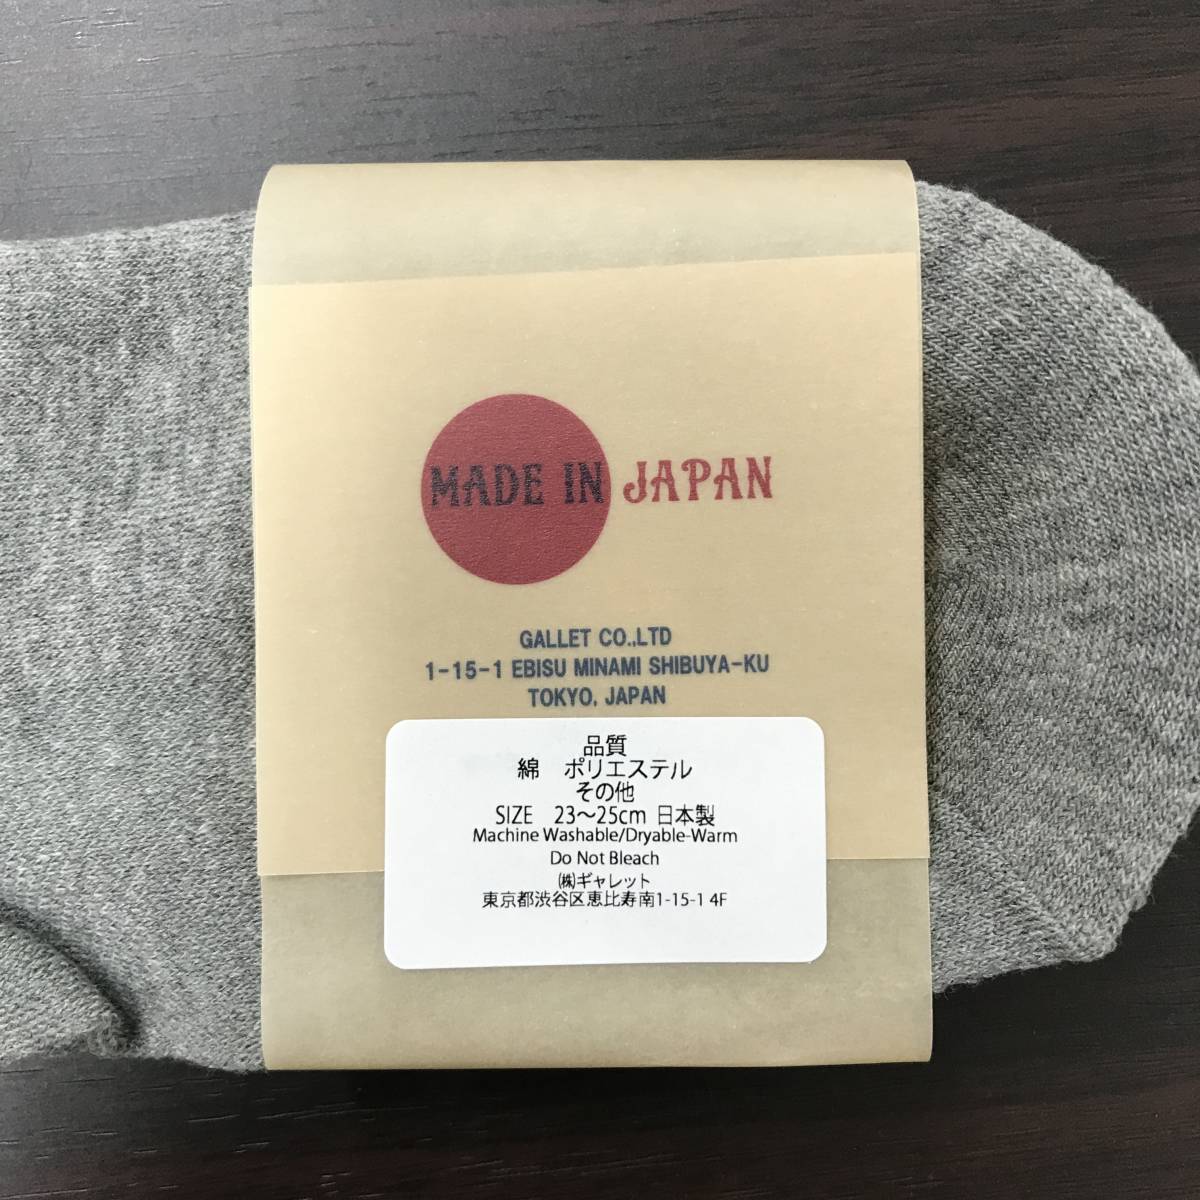 9セット 未使用 /23-25cm/ ANONYMOUSISM 靴下 くつ下 ソックス グレー アンクル レッグウェア 日本製 くるぶし 灰色 アノニマスイズム_画像3